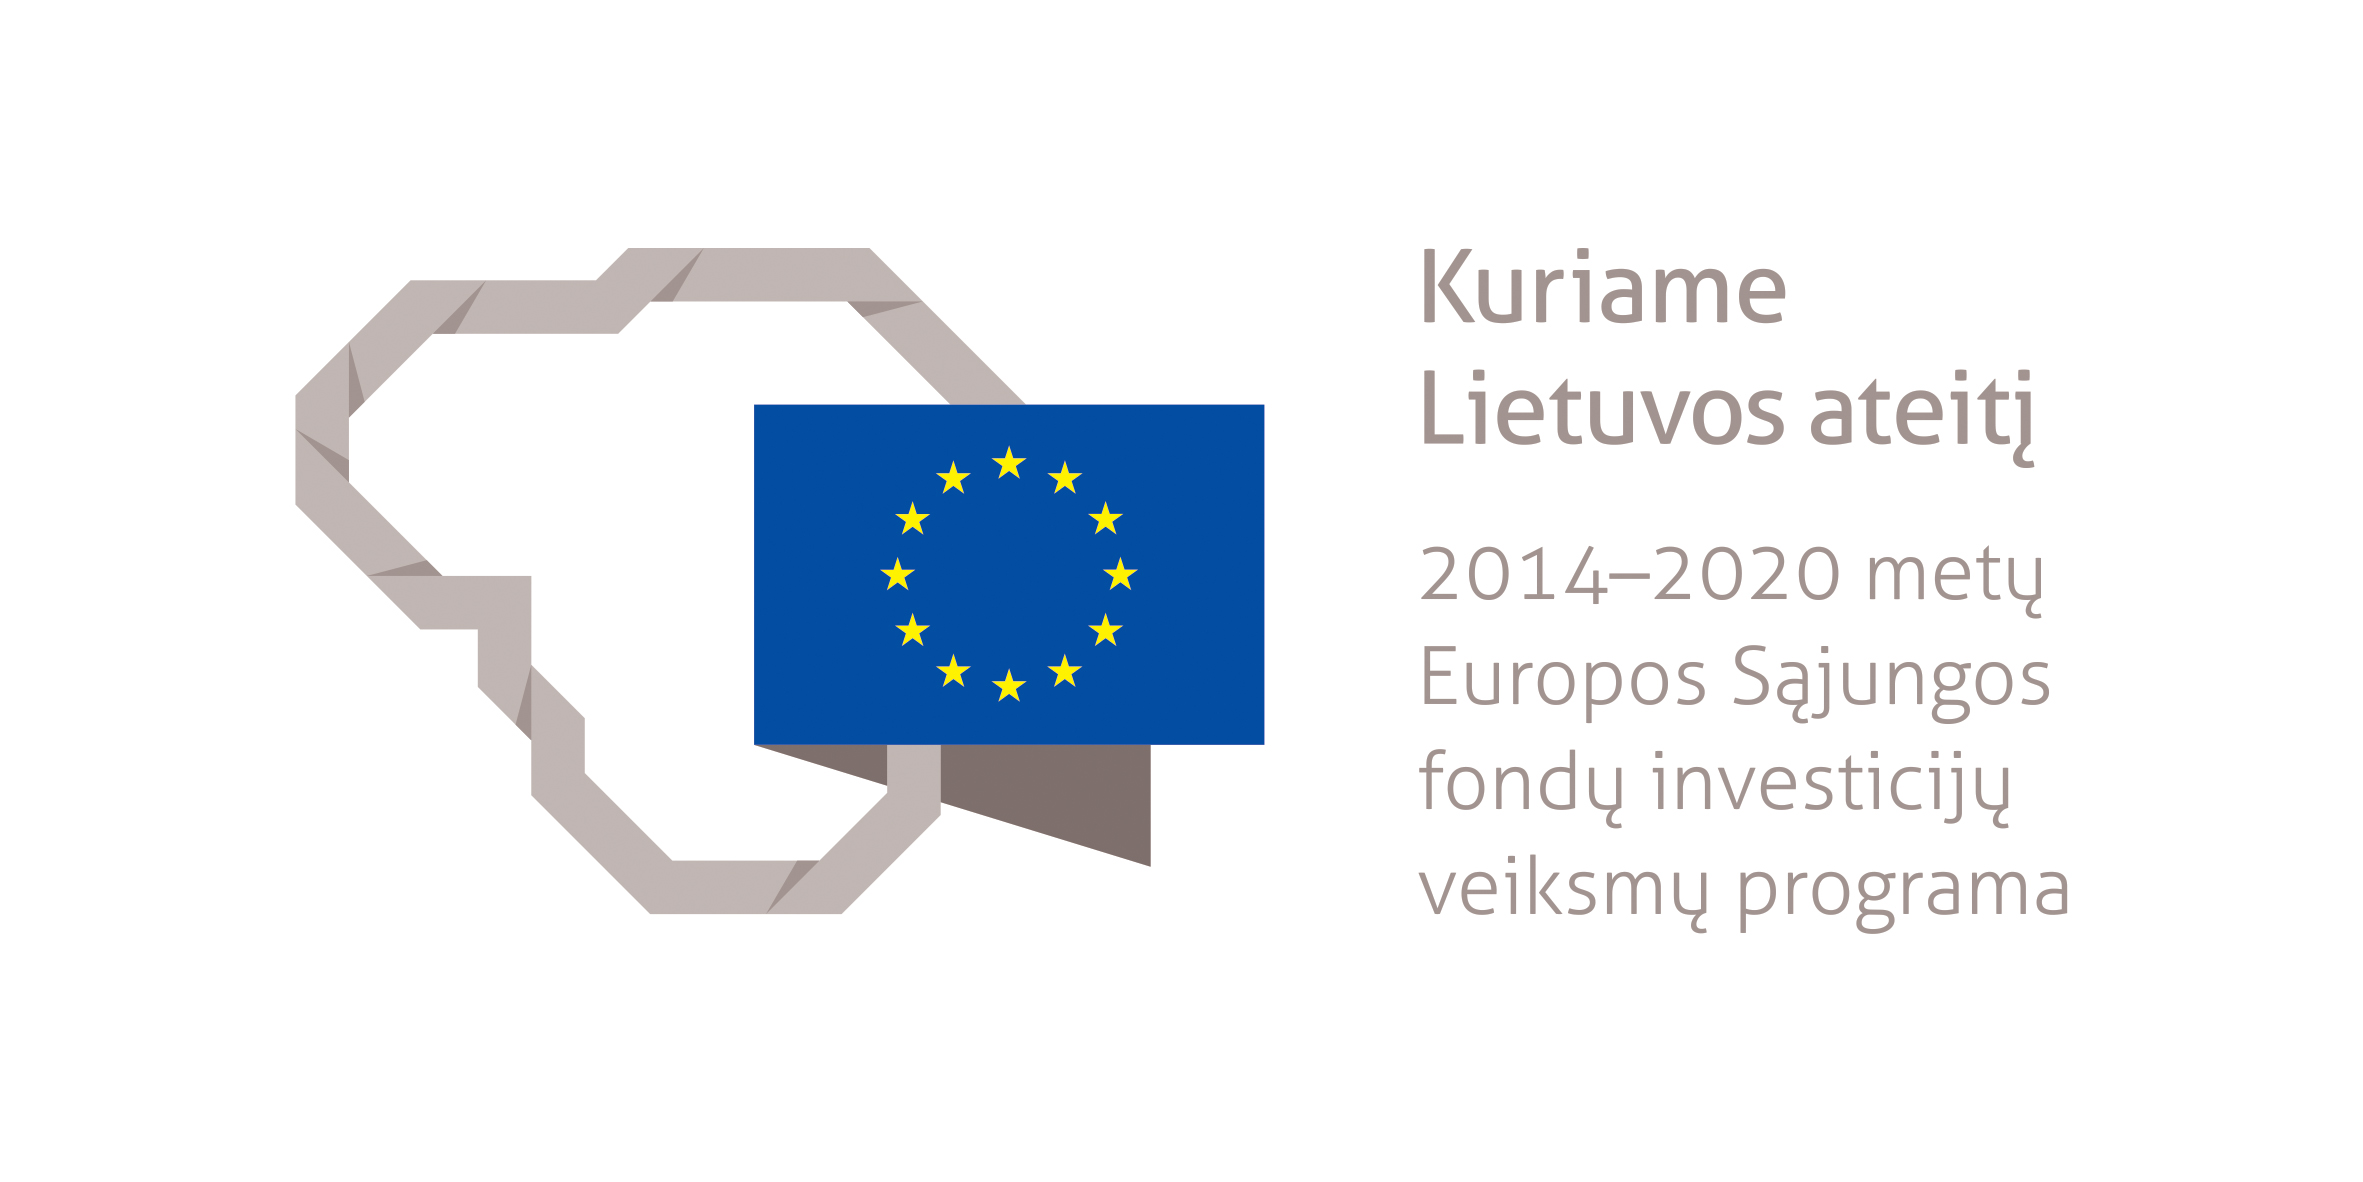 Kuriame Lietuvos ateitį: 2014-2020 metų Europos Sąjungos investicijų veiksmų programa